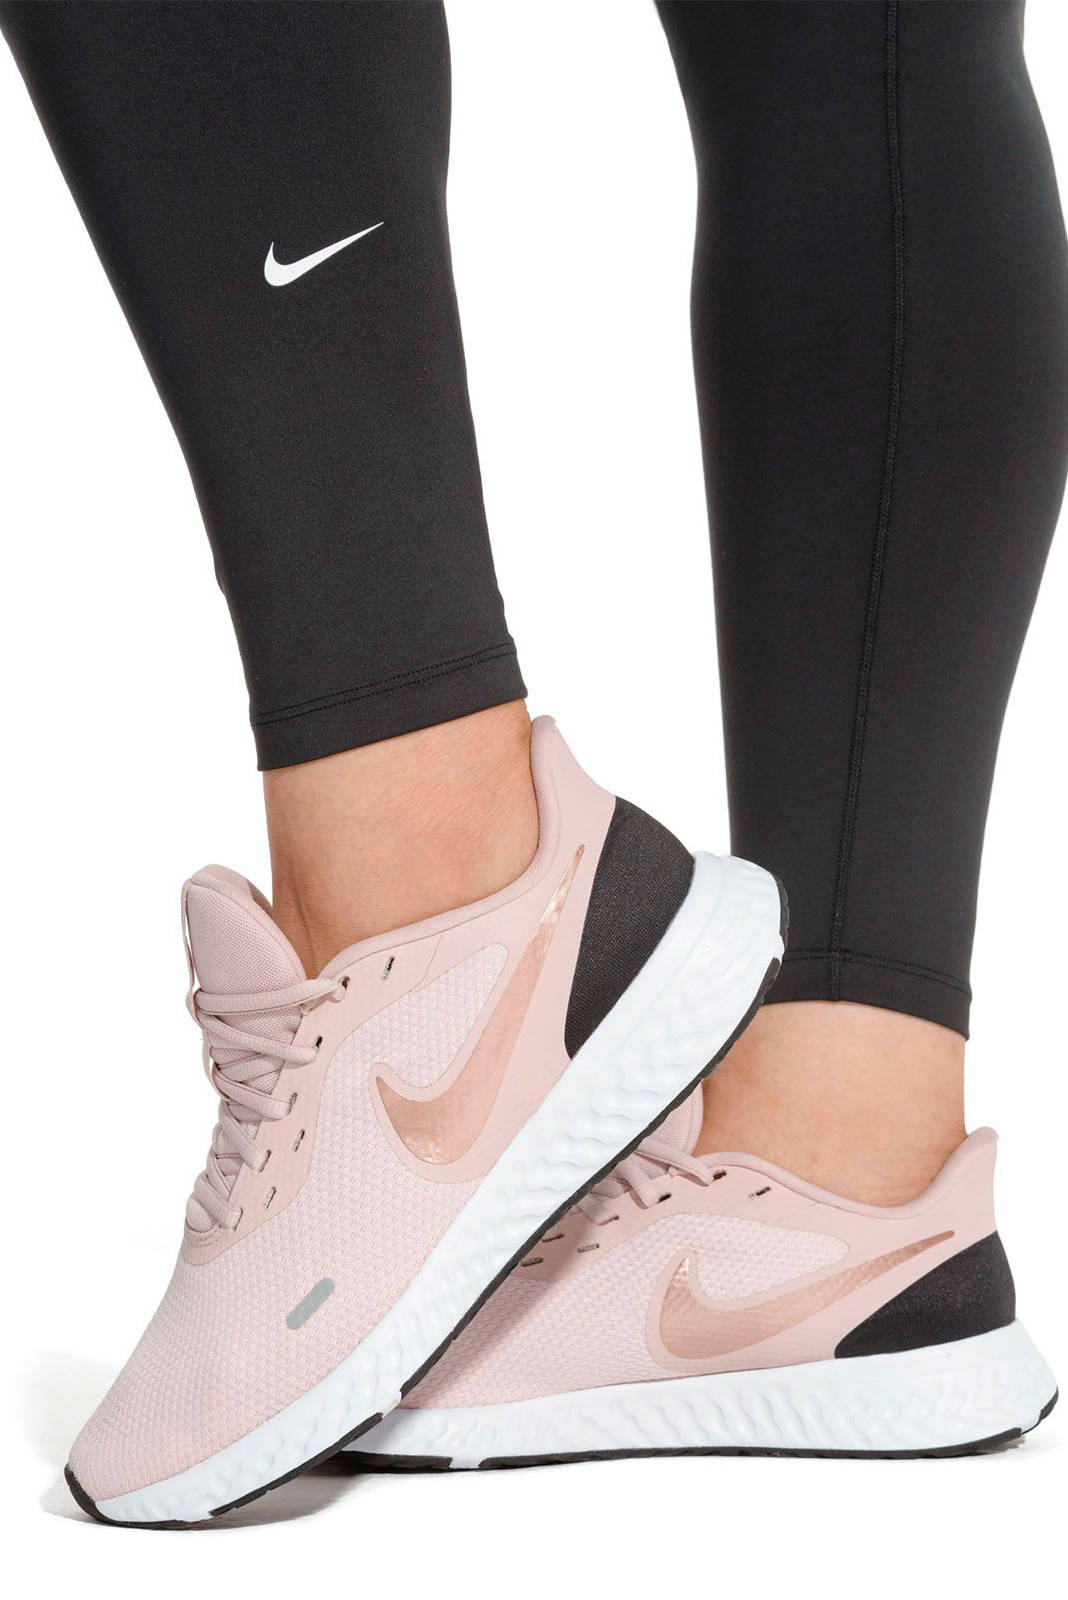 Nike Revolution 5 hardloopschoenen lichtroze/brons | wehkamp